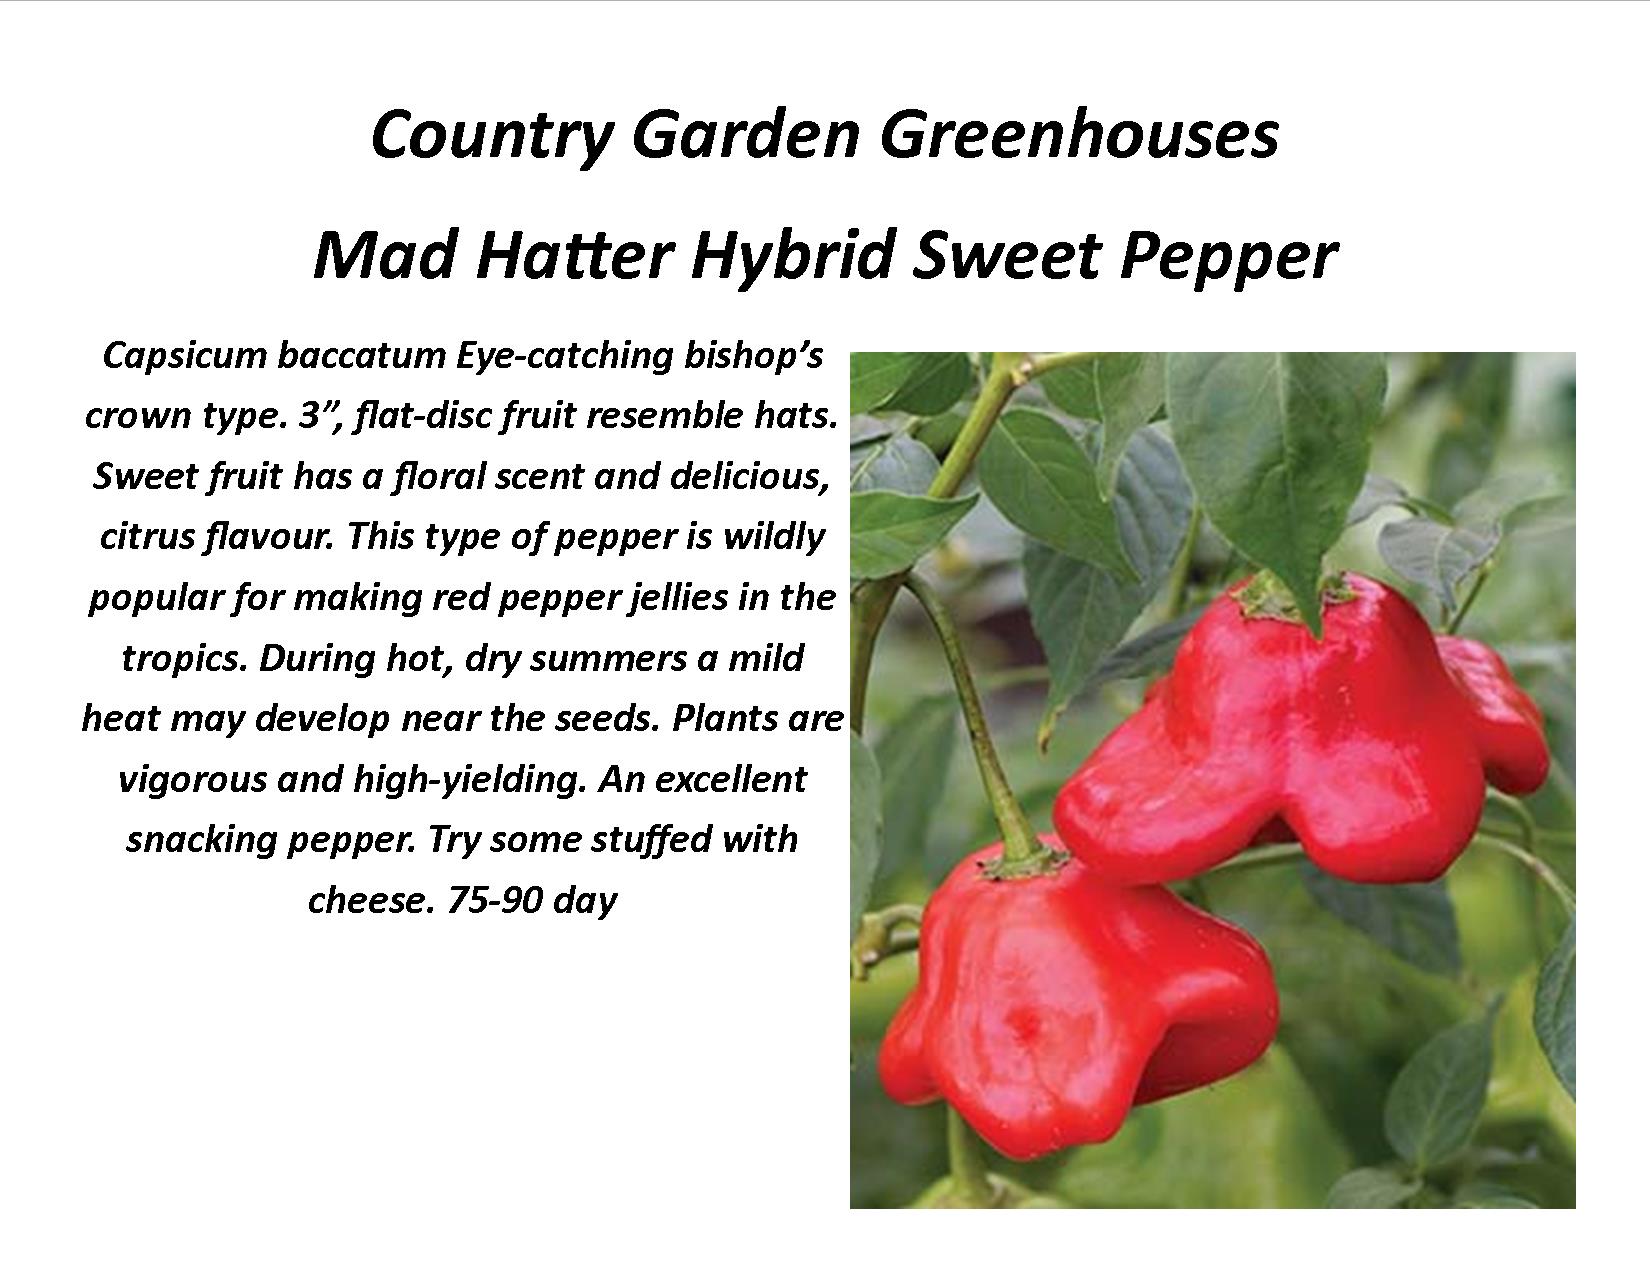 Mad Hatter Hybrid Sweet Pepper